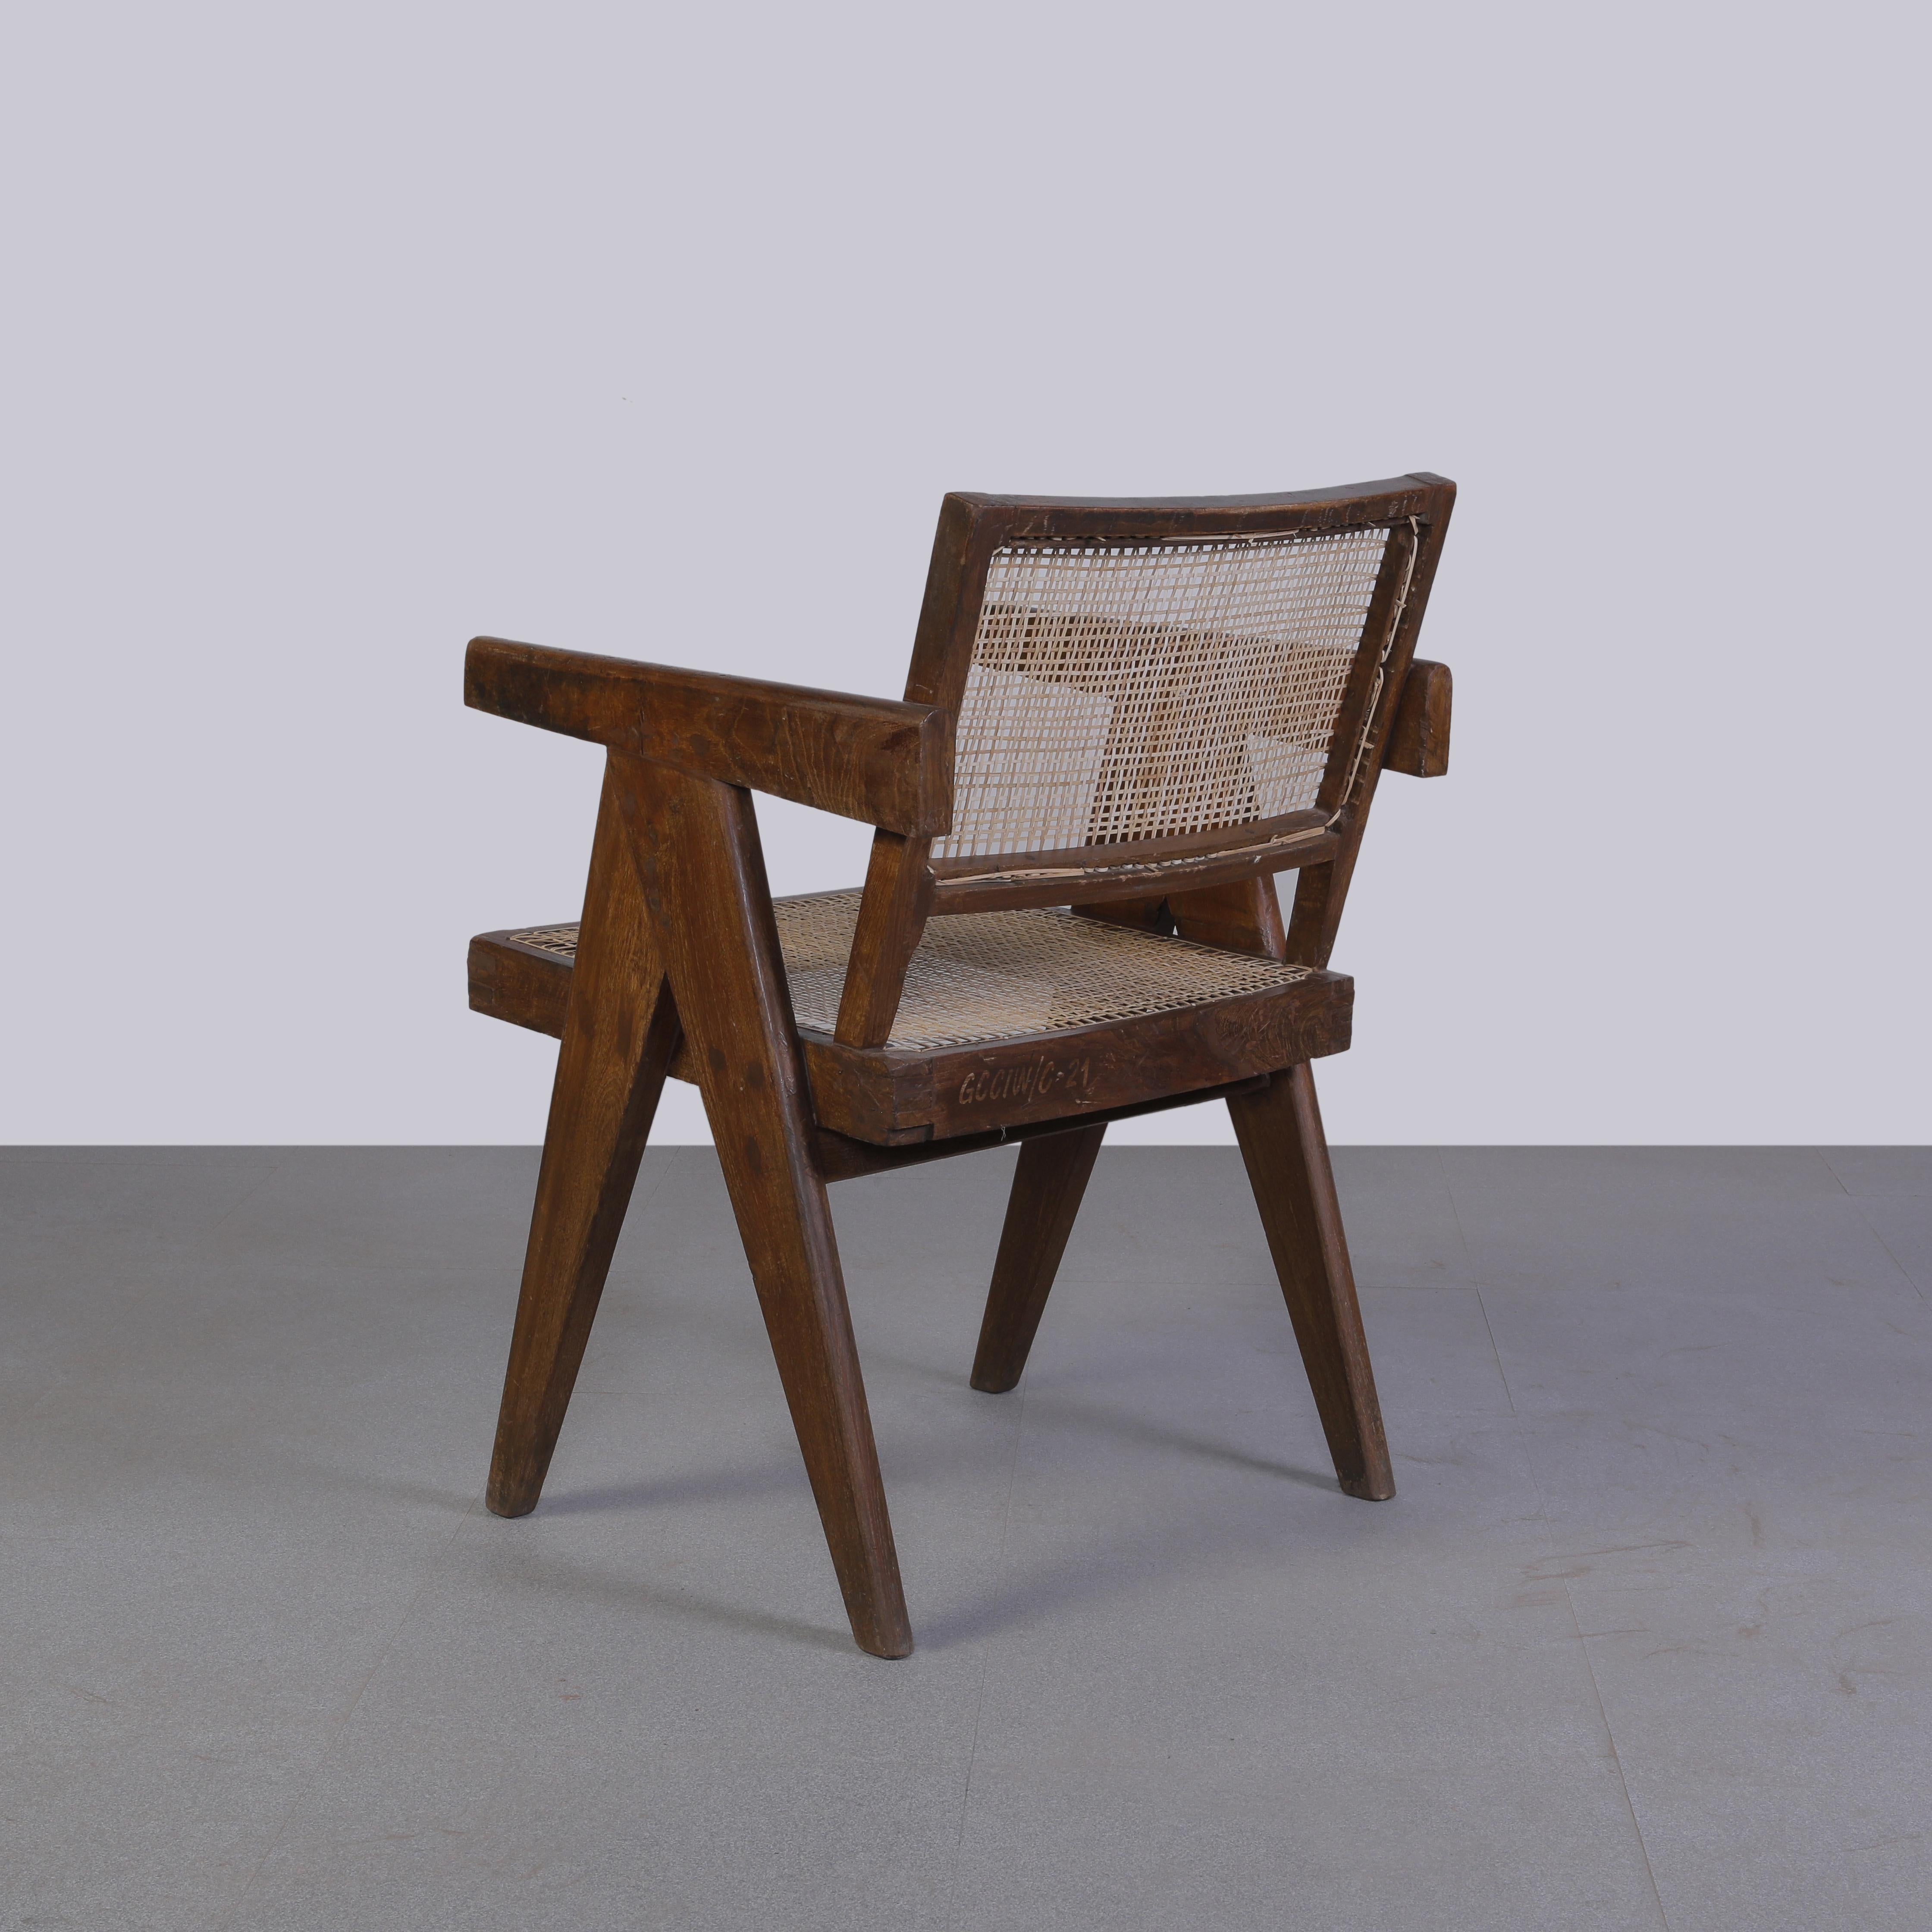 Der Stuhl ist aus patiniertem Teakholz gefertigt, was dem Stuhl einen starken Charakter verleiht, der alle Spuren des Alters und seine Einzigartigkeit zeigt. Dieses Stück hat authentische Buchstaben auf der Rückseite, die es noch wertvoller machen